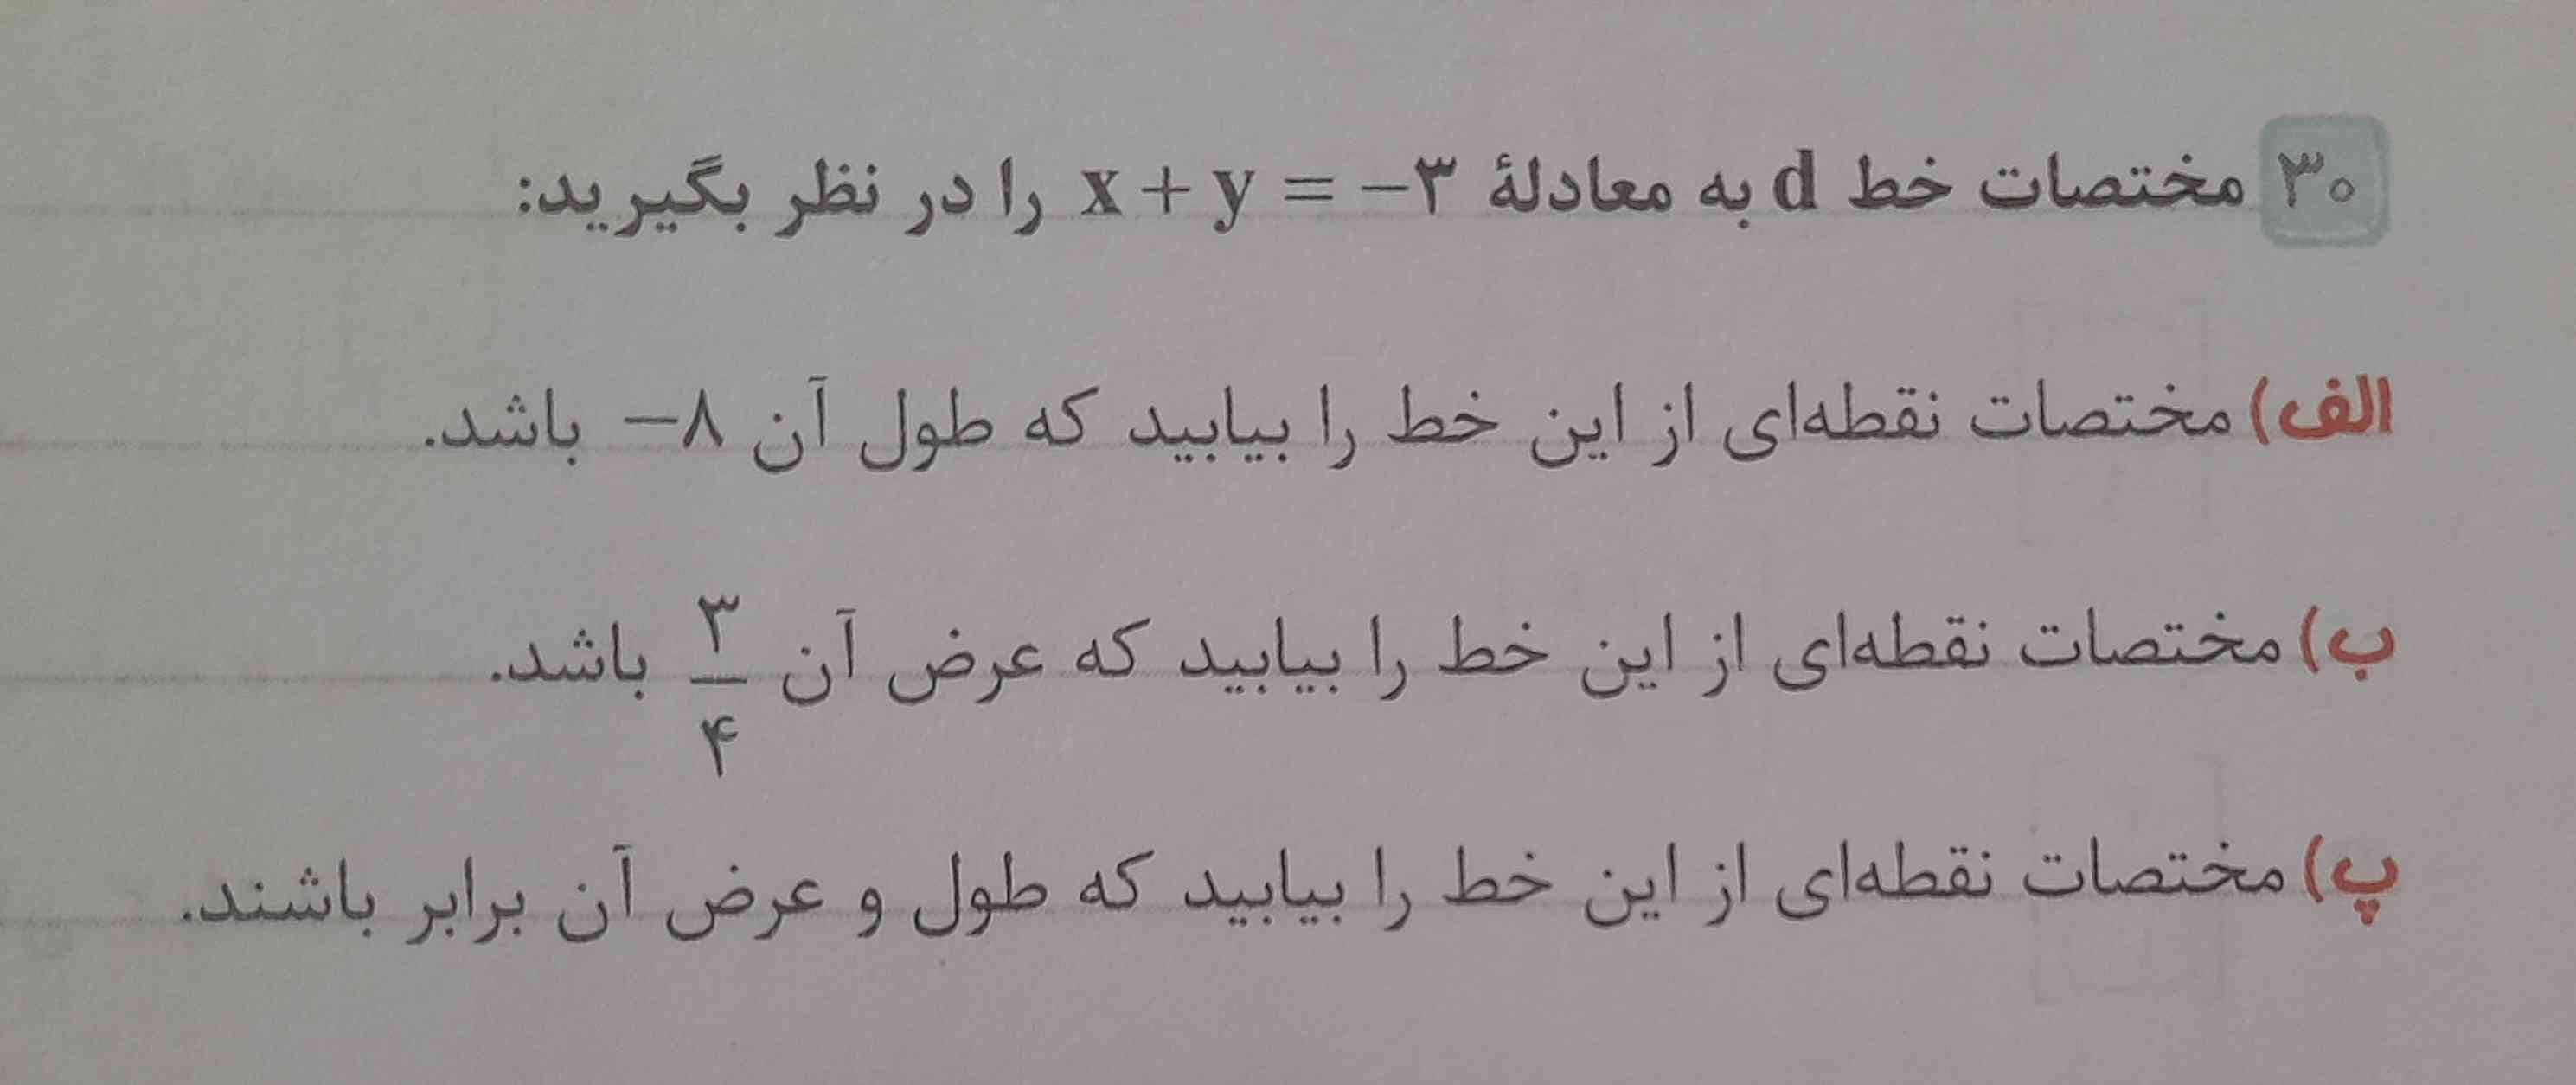 حل کنید و توضیح بدین 
تاج میدم حتما